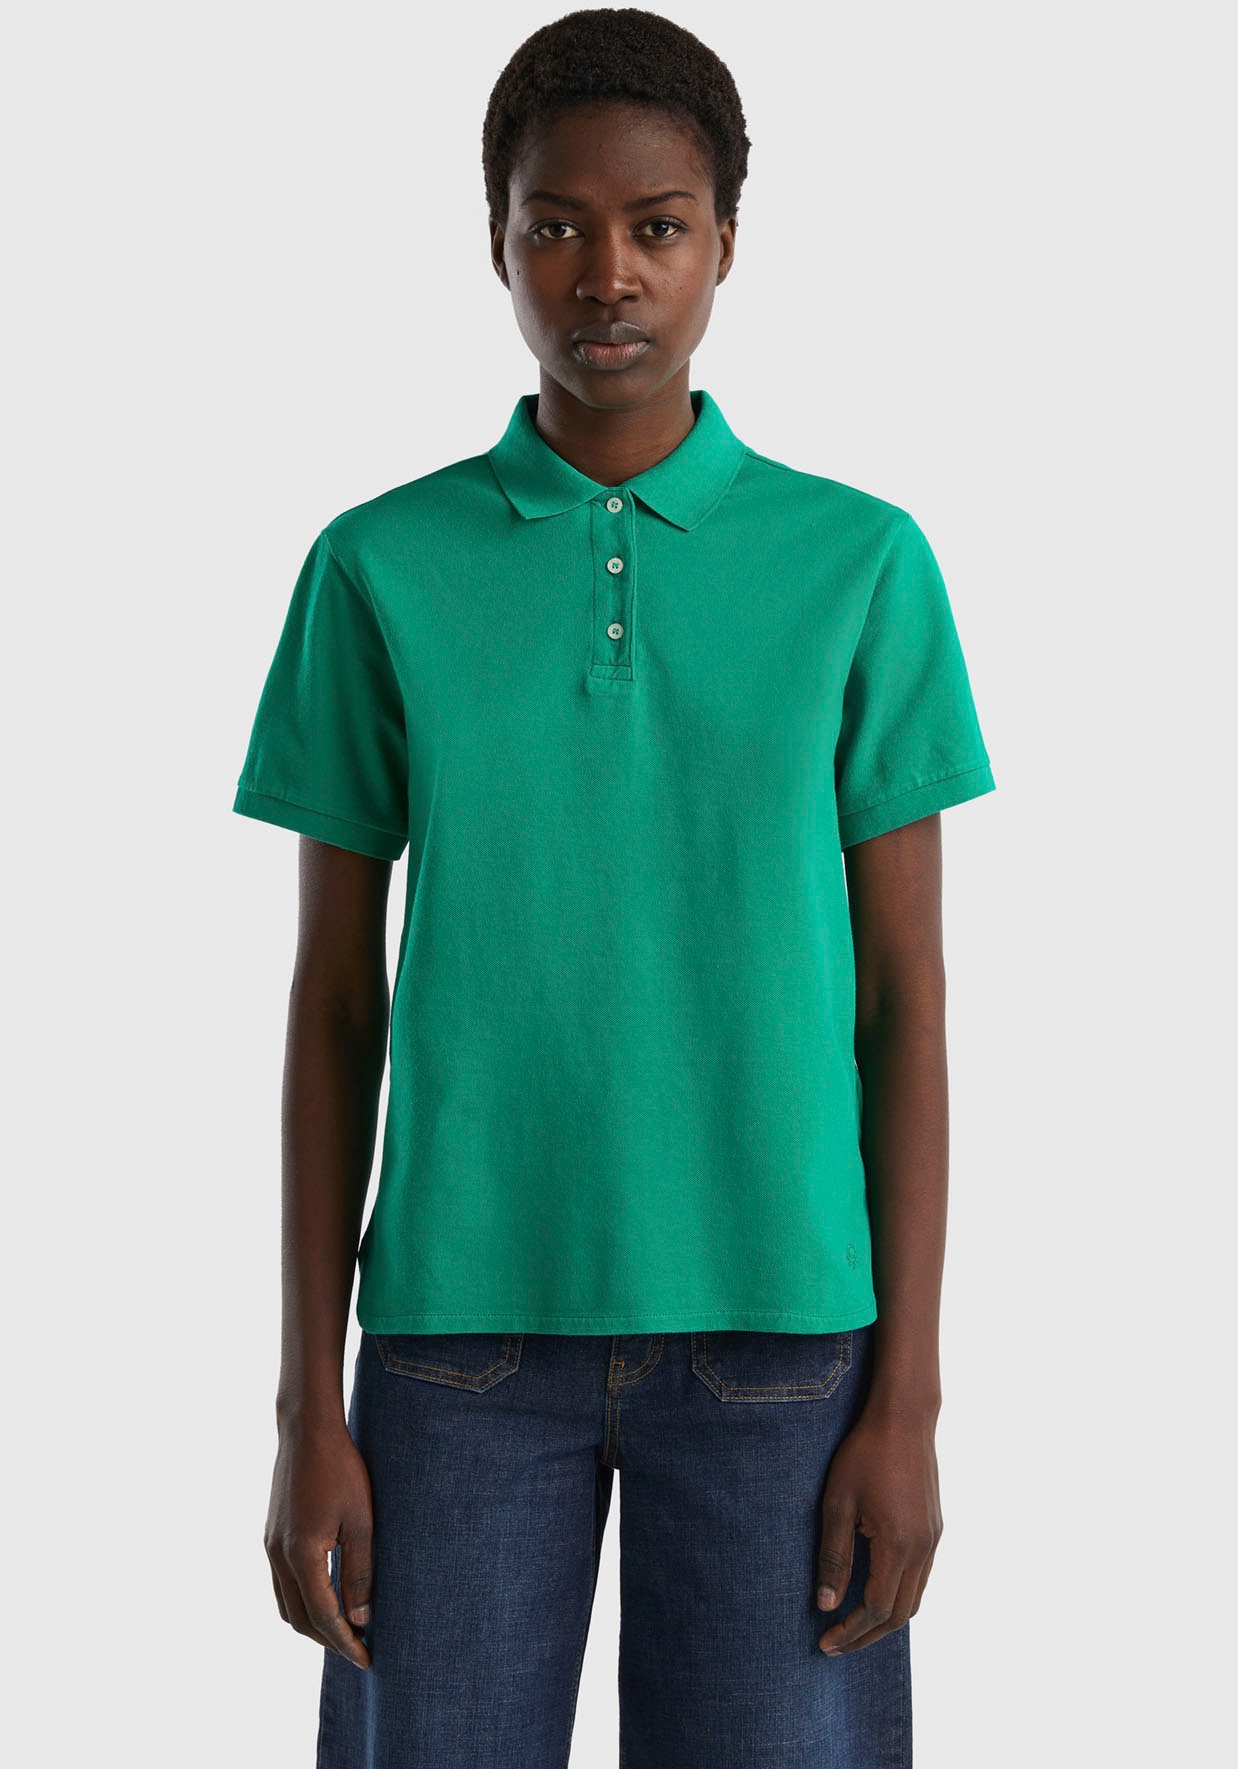 Poloshirt, Knöpfen mit of United kaufen bei perlmuttfarbenen Colors OTTO Benetton online